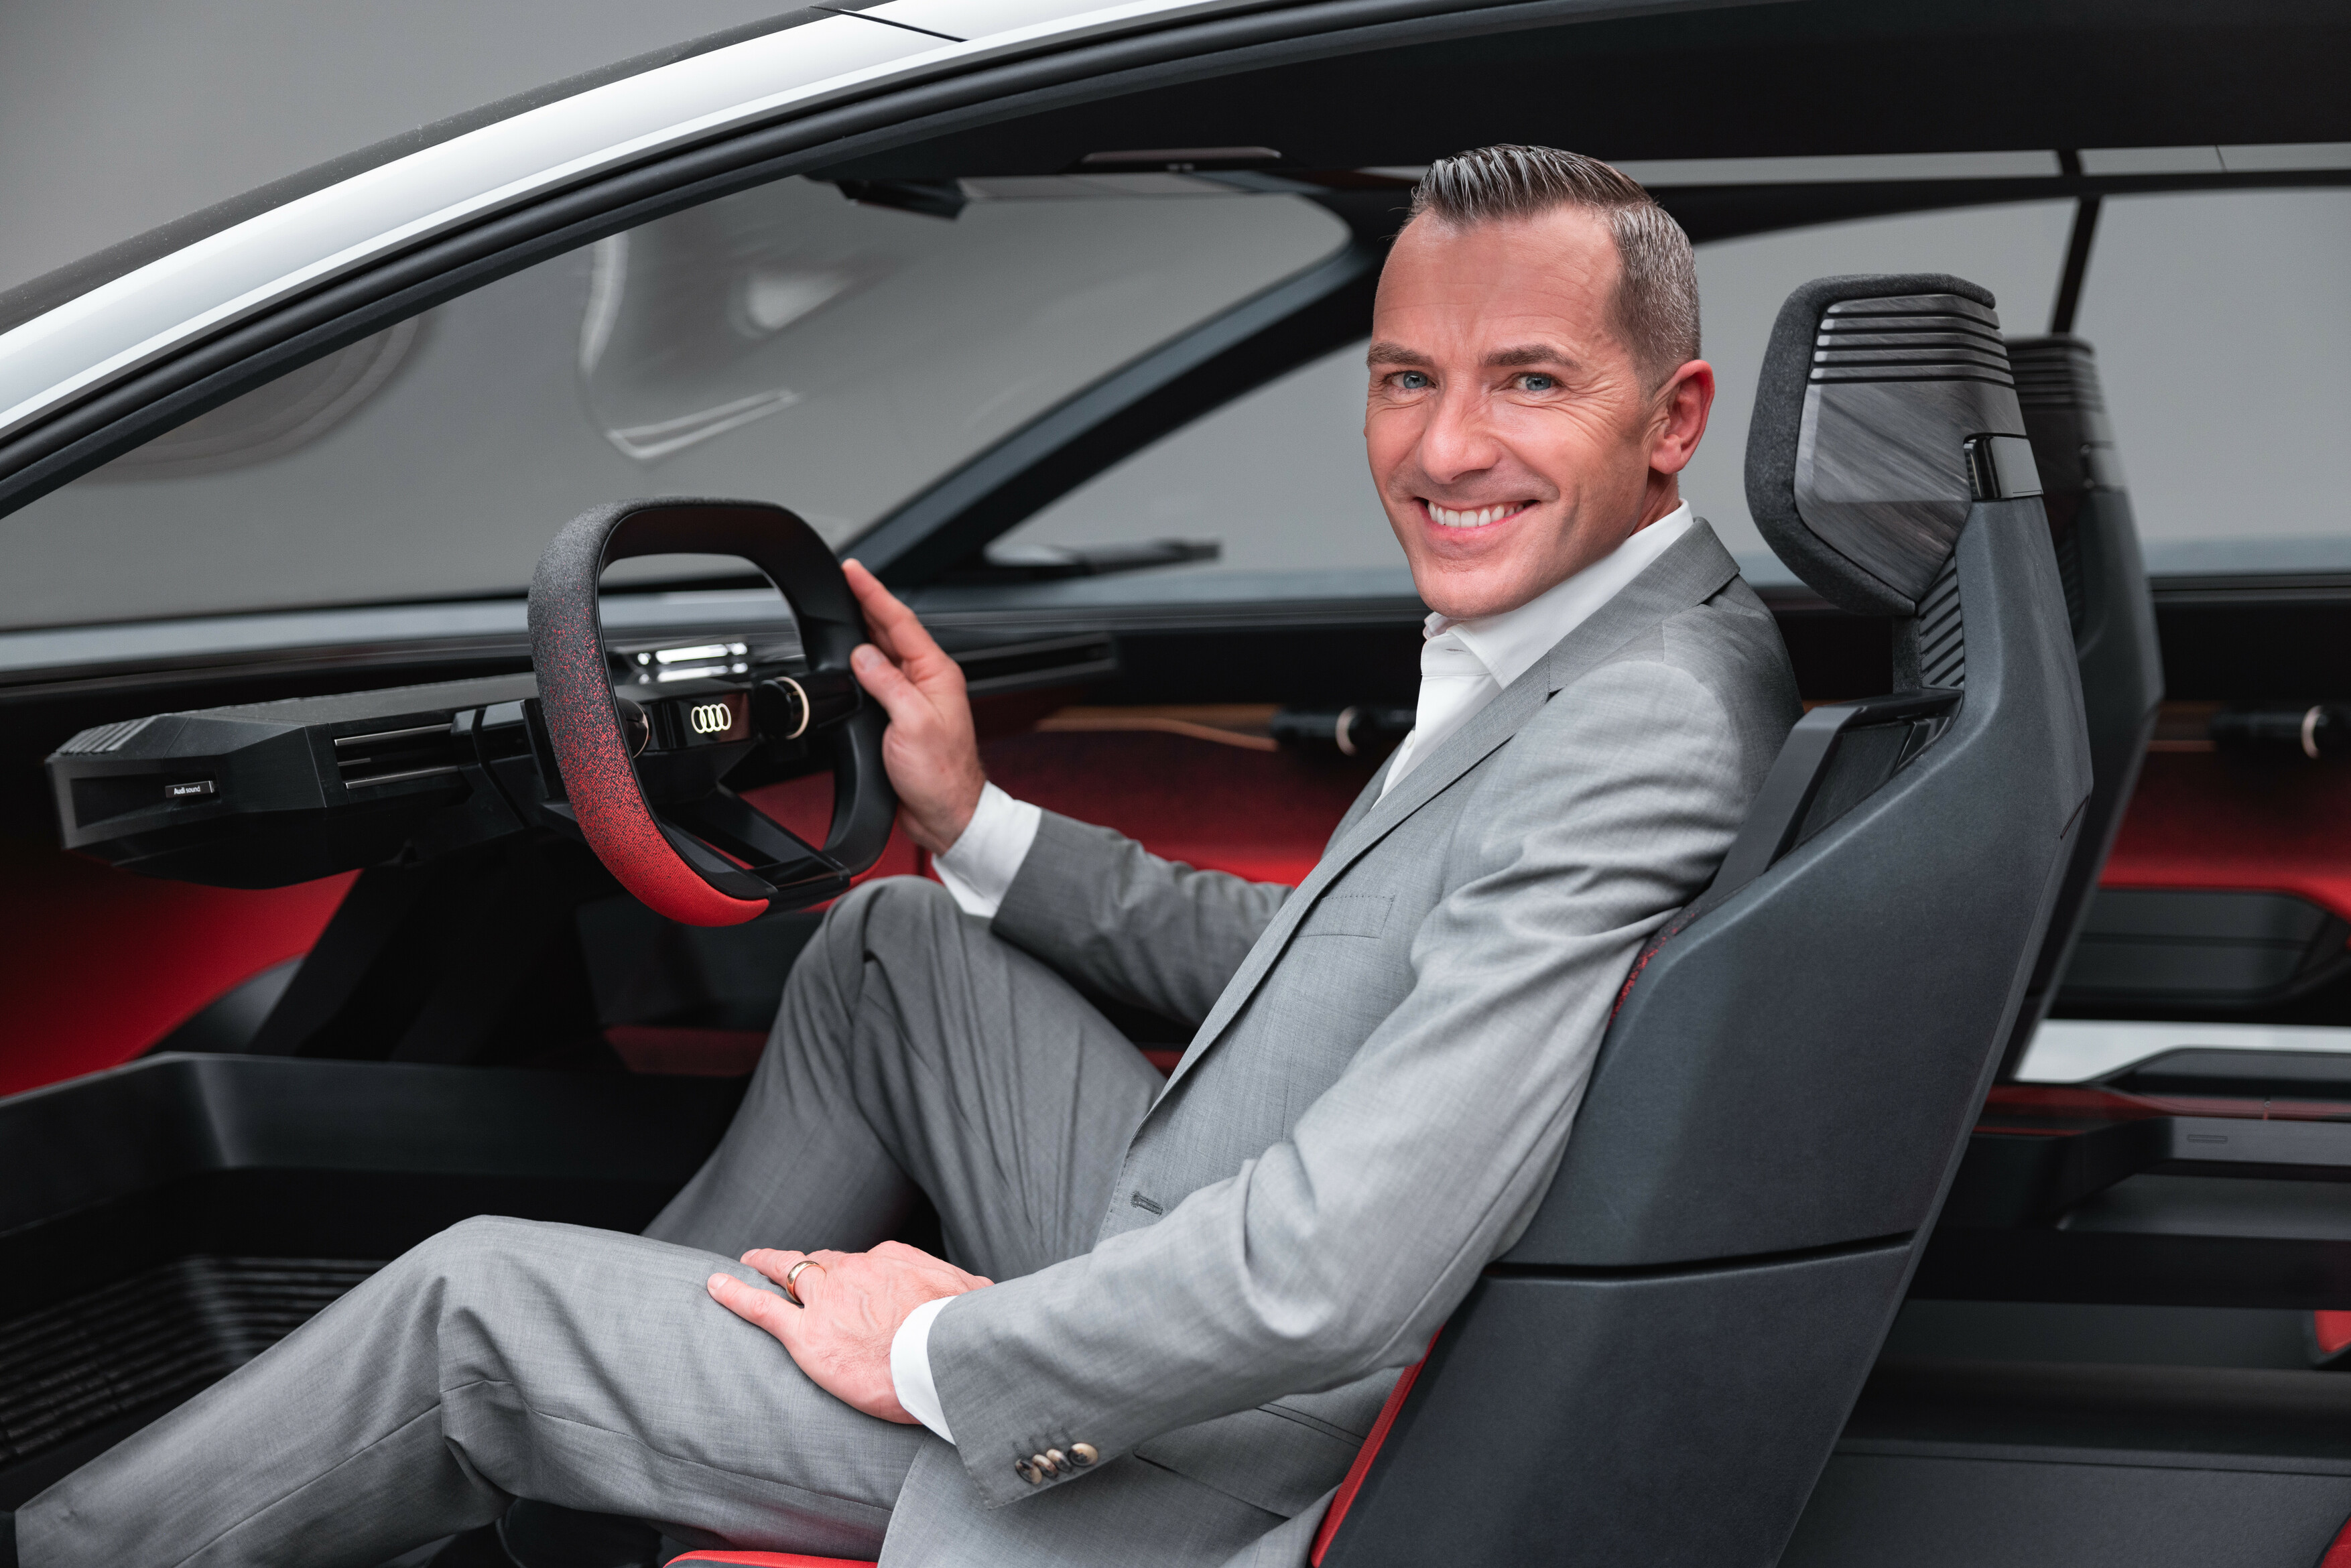 Audi activesphere concept, 2023 – Henrik Wenders (Head of Brand)